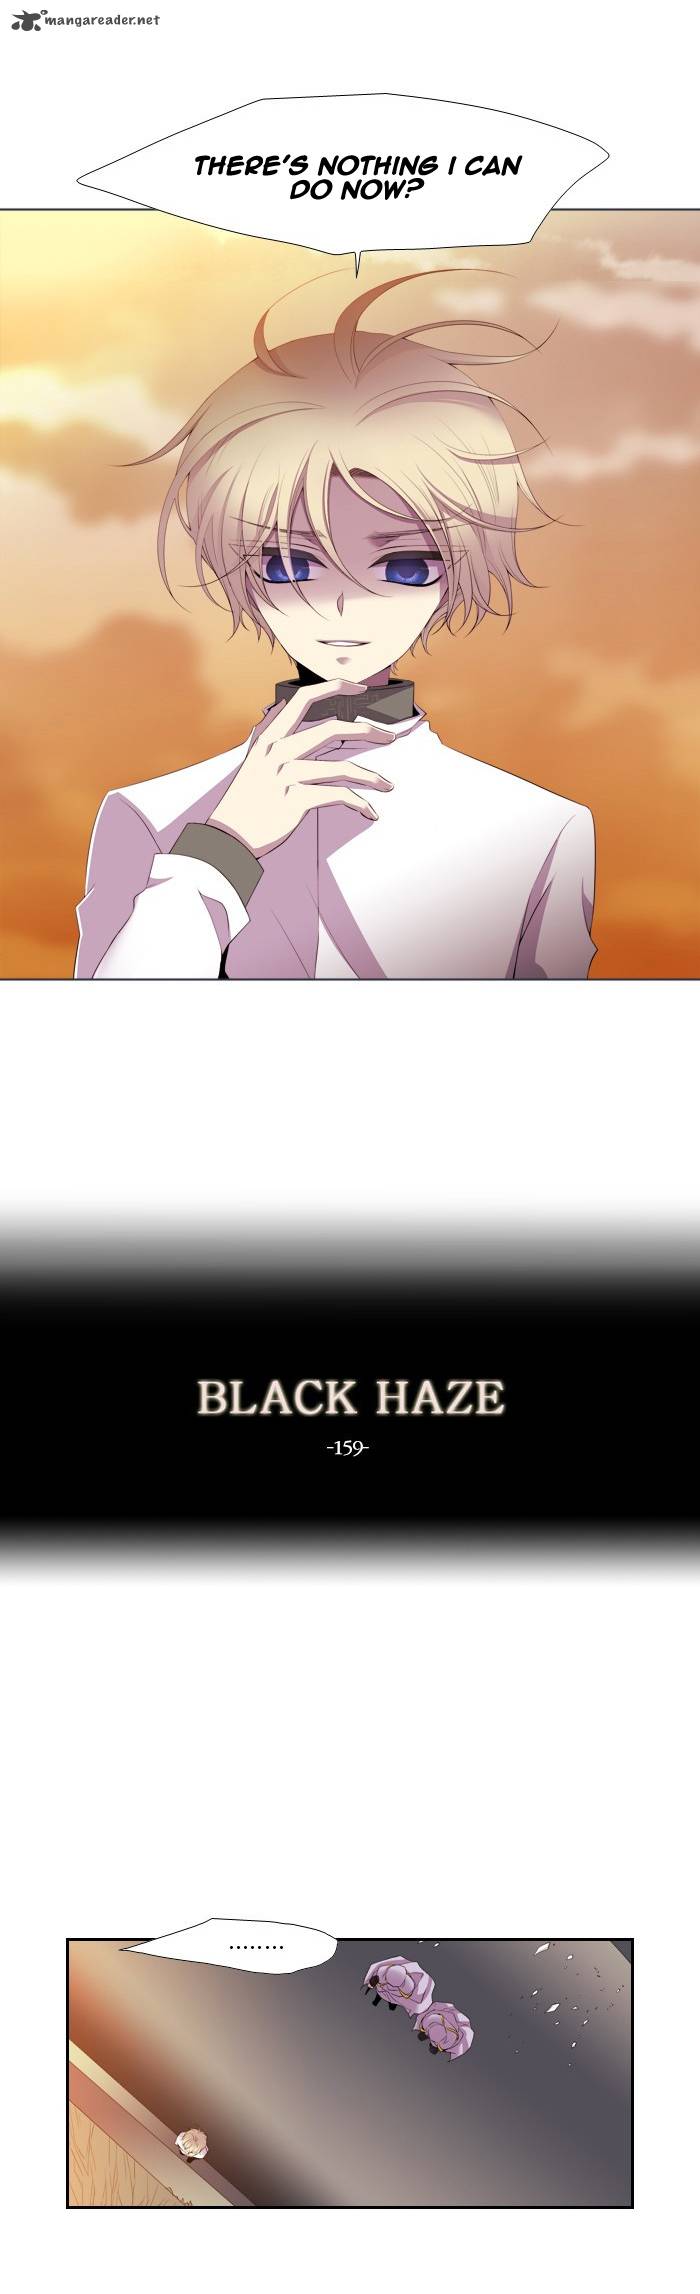 black_haze_159_7